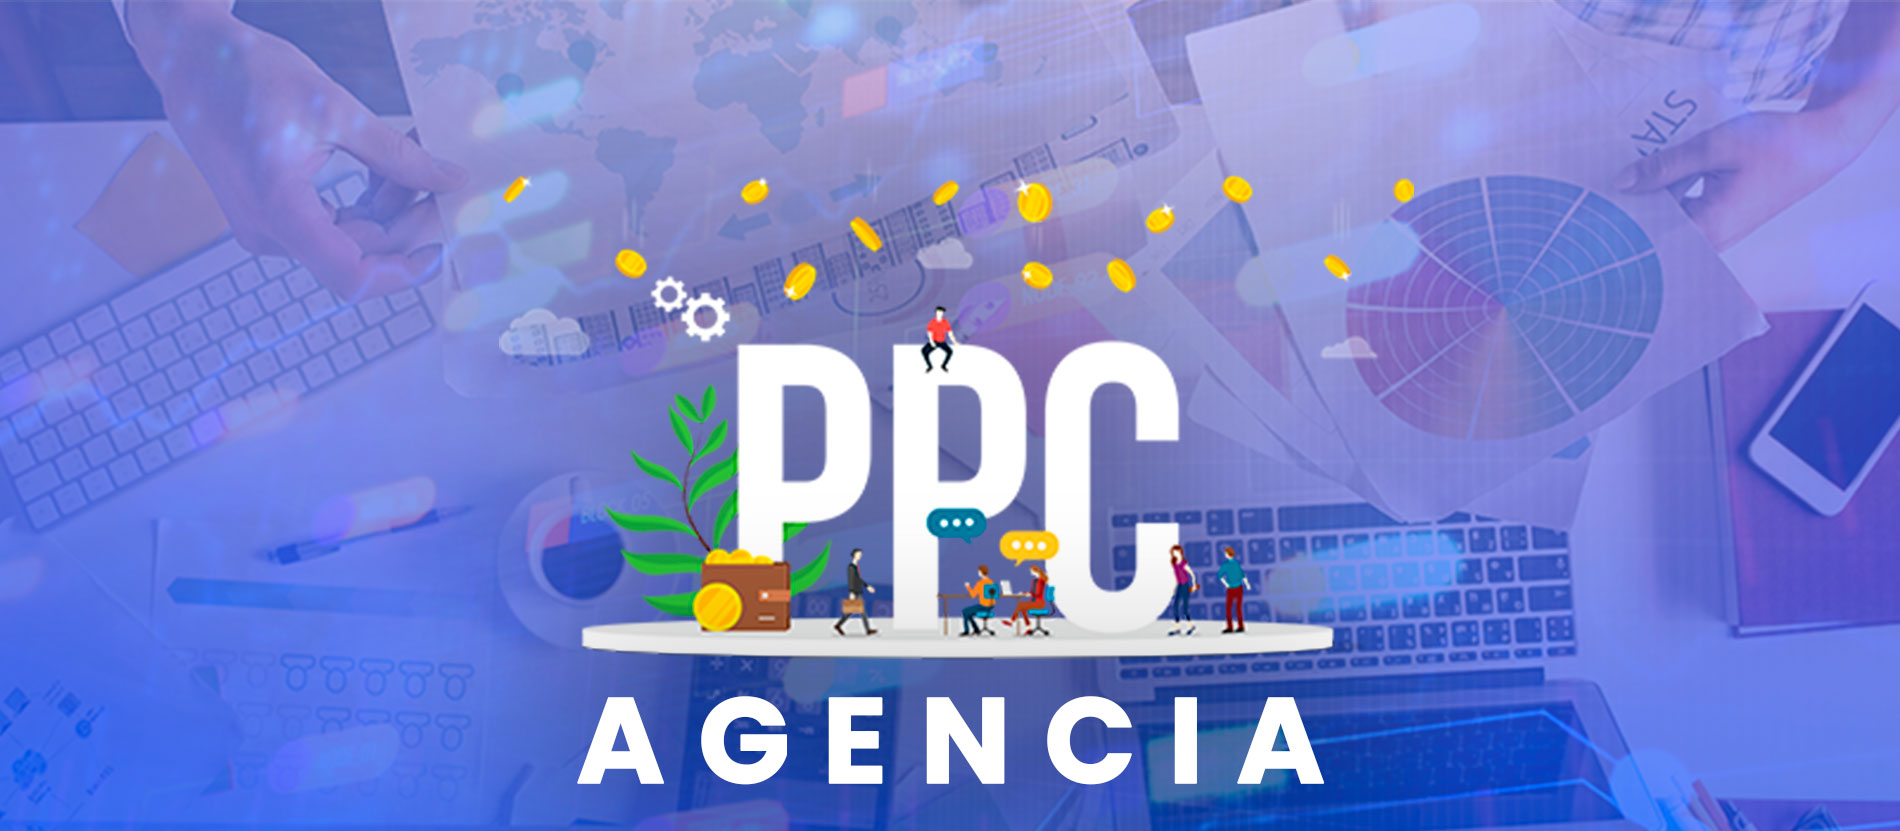 🚀 Agencia PPC: Impulsando Negocios con Marketing Digital